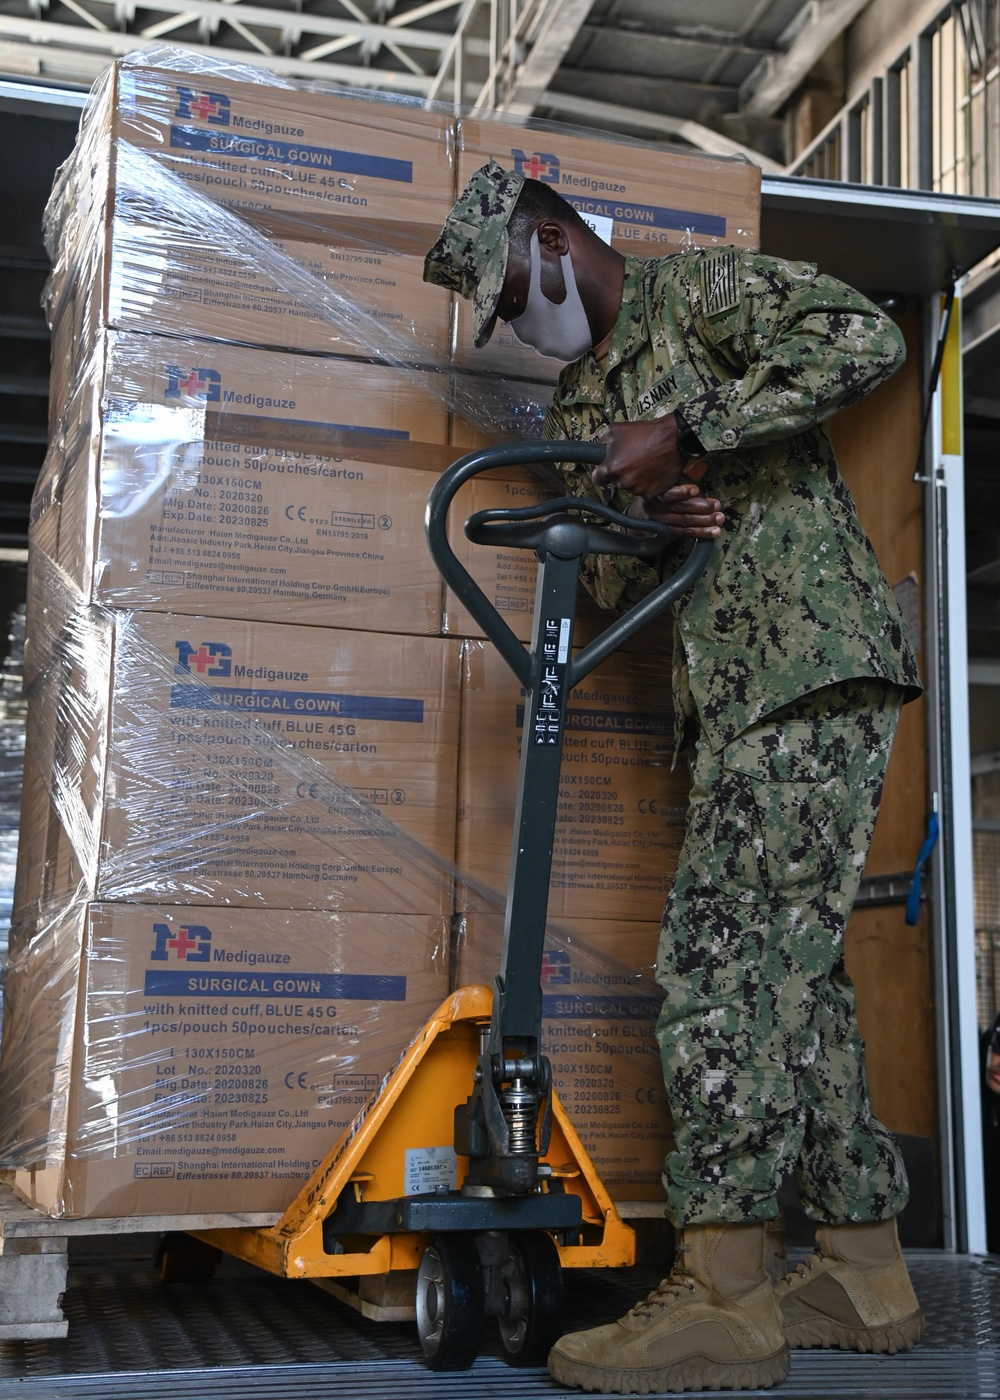 NAS Sigonella Sailors Deliver PPE to Host Nation Hospitals